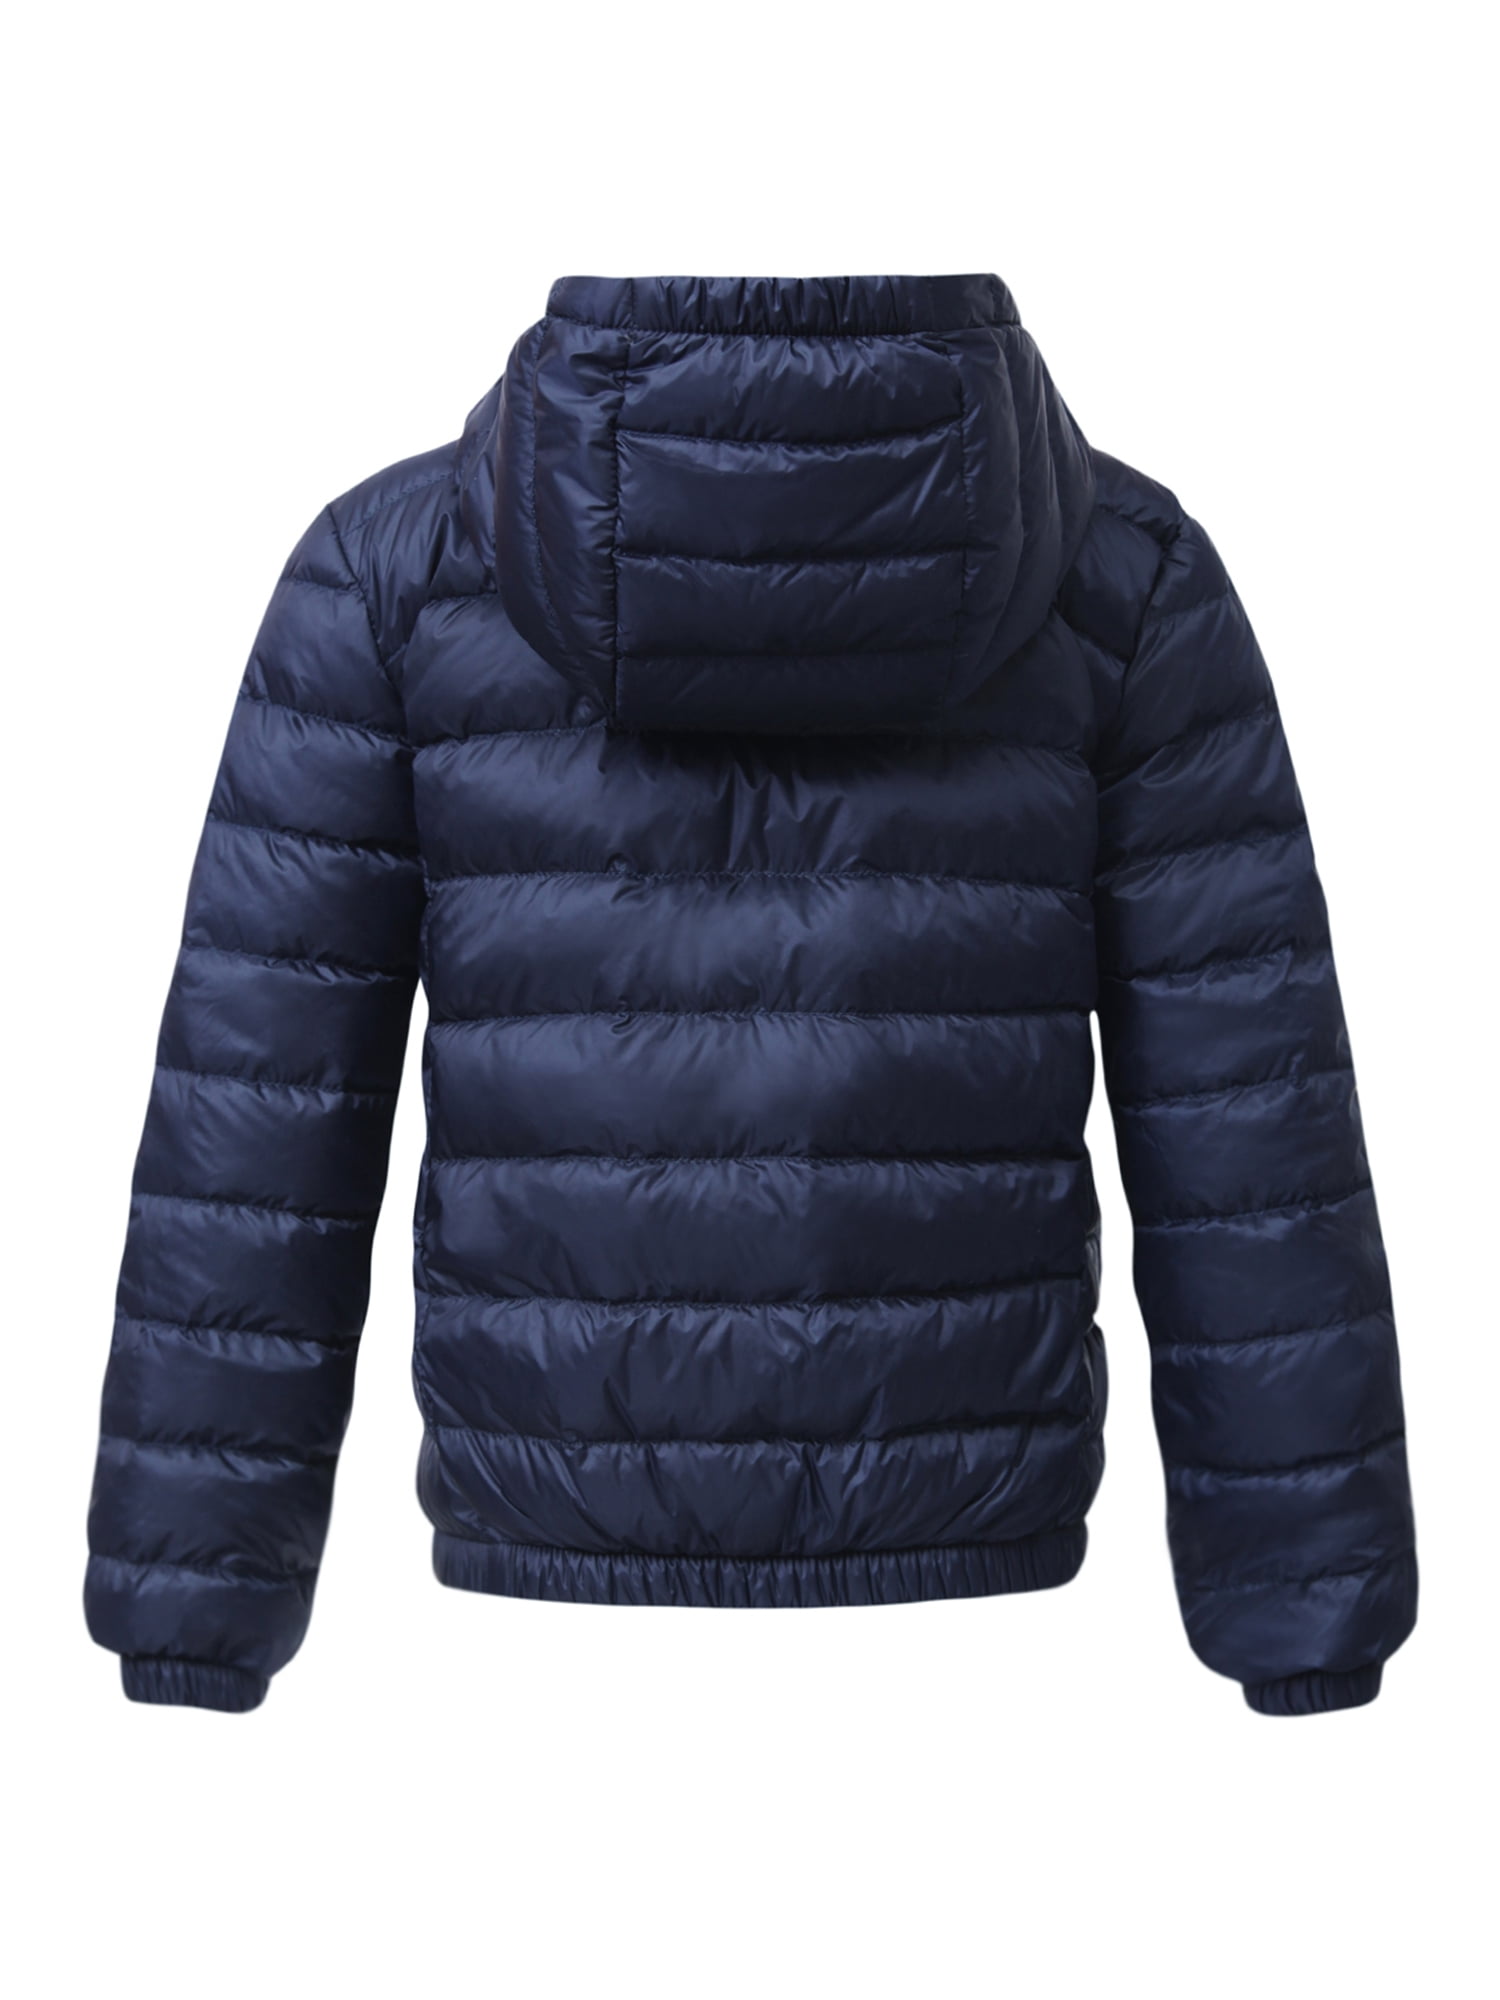 Rokka&Rolla Boys' Ultra Lightweight Packable Down Puffer Jacket Coat